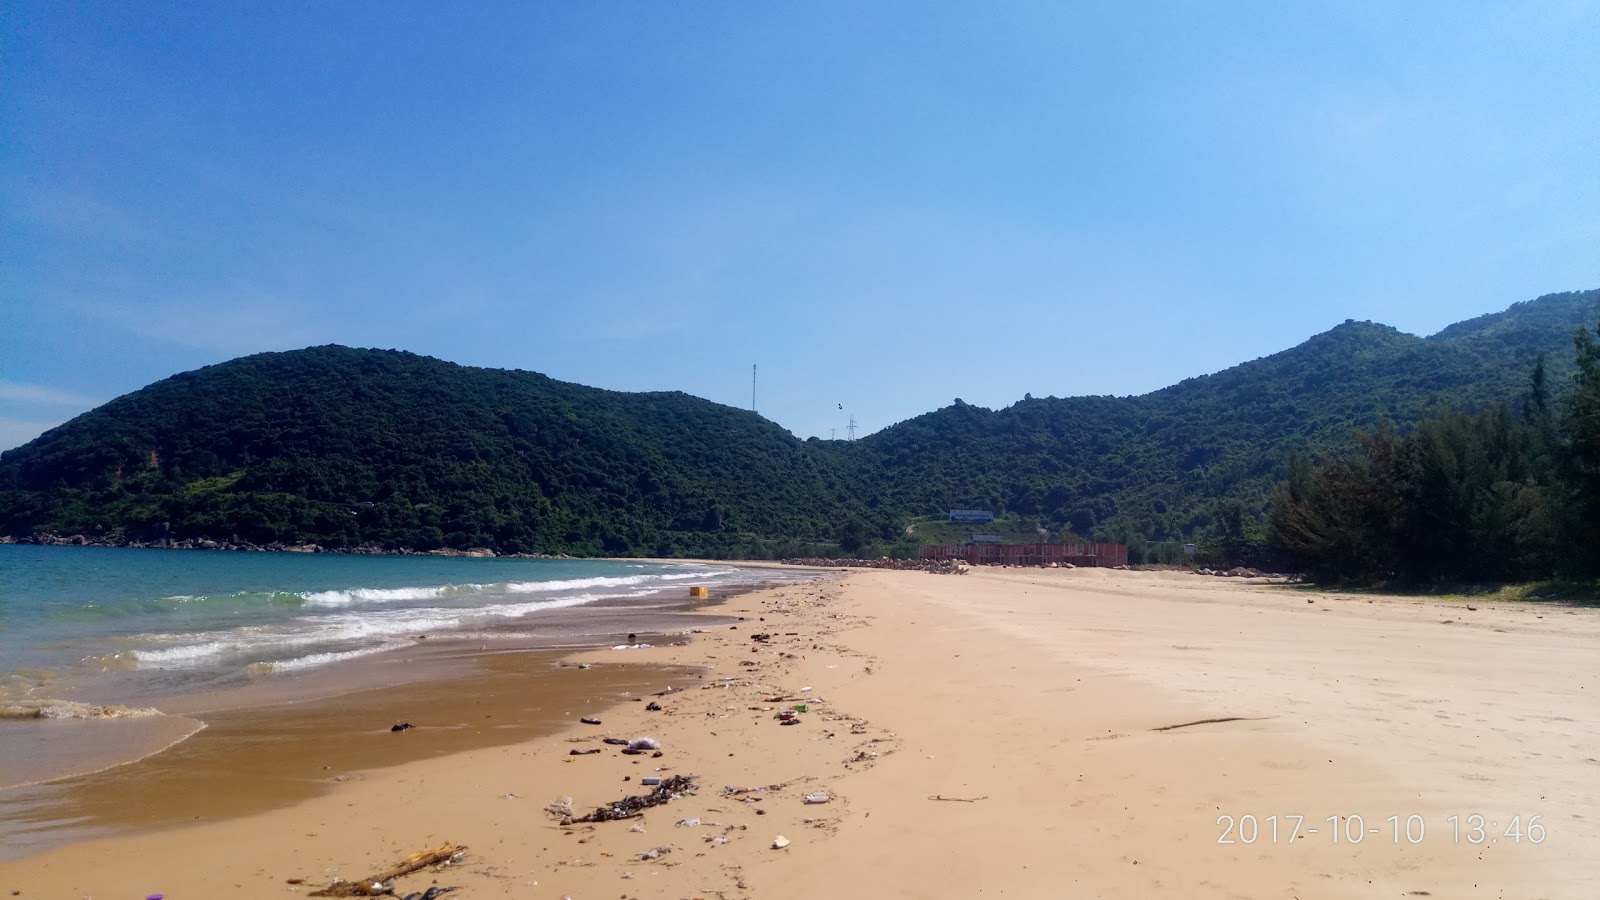 Foto af Dai Lanh Beach - populært sted blandt afslapningskendere